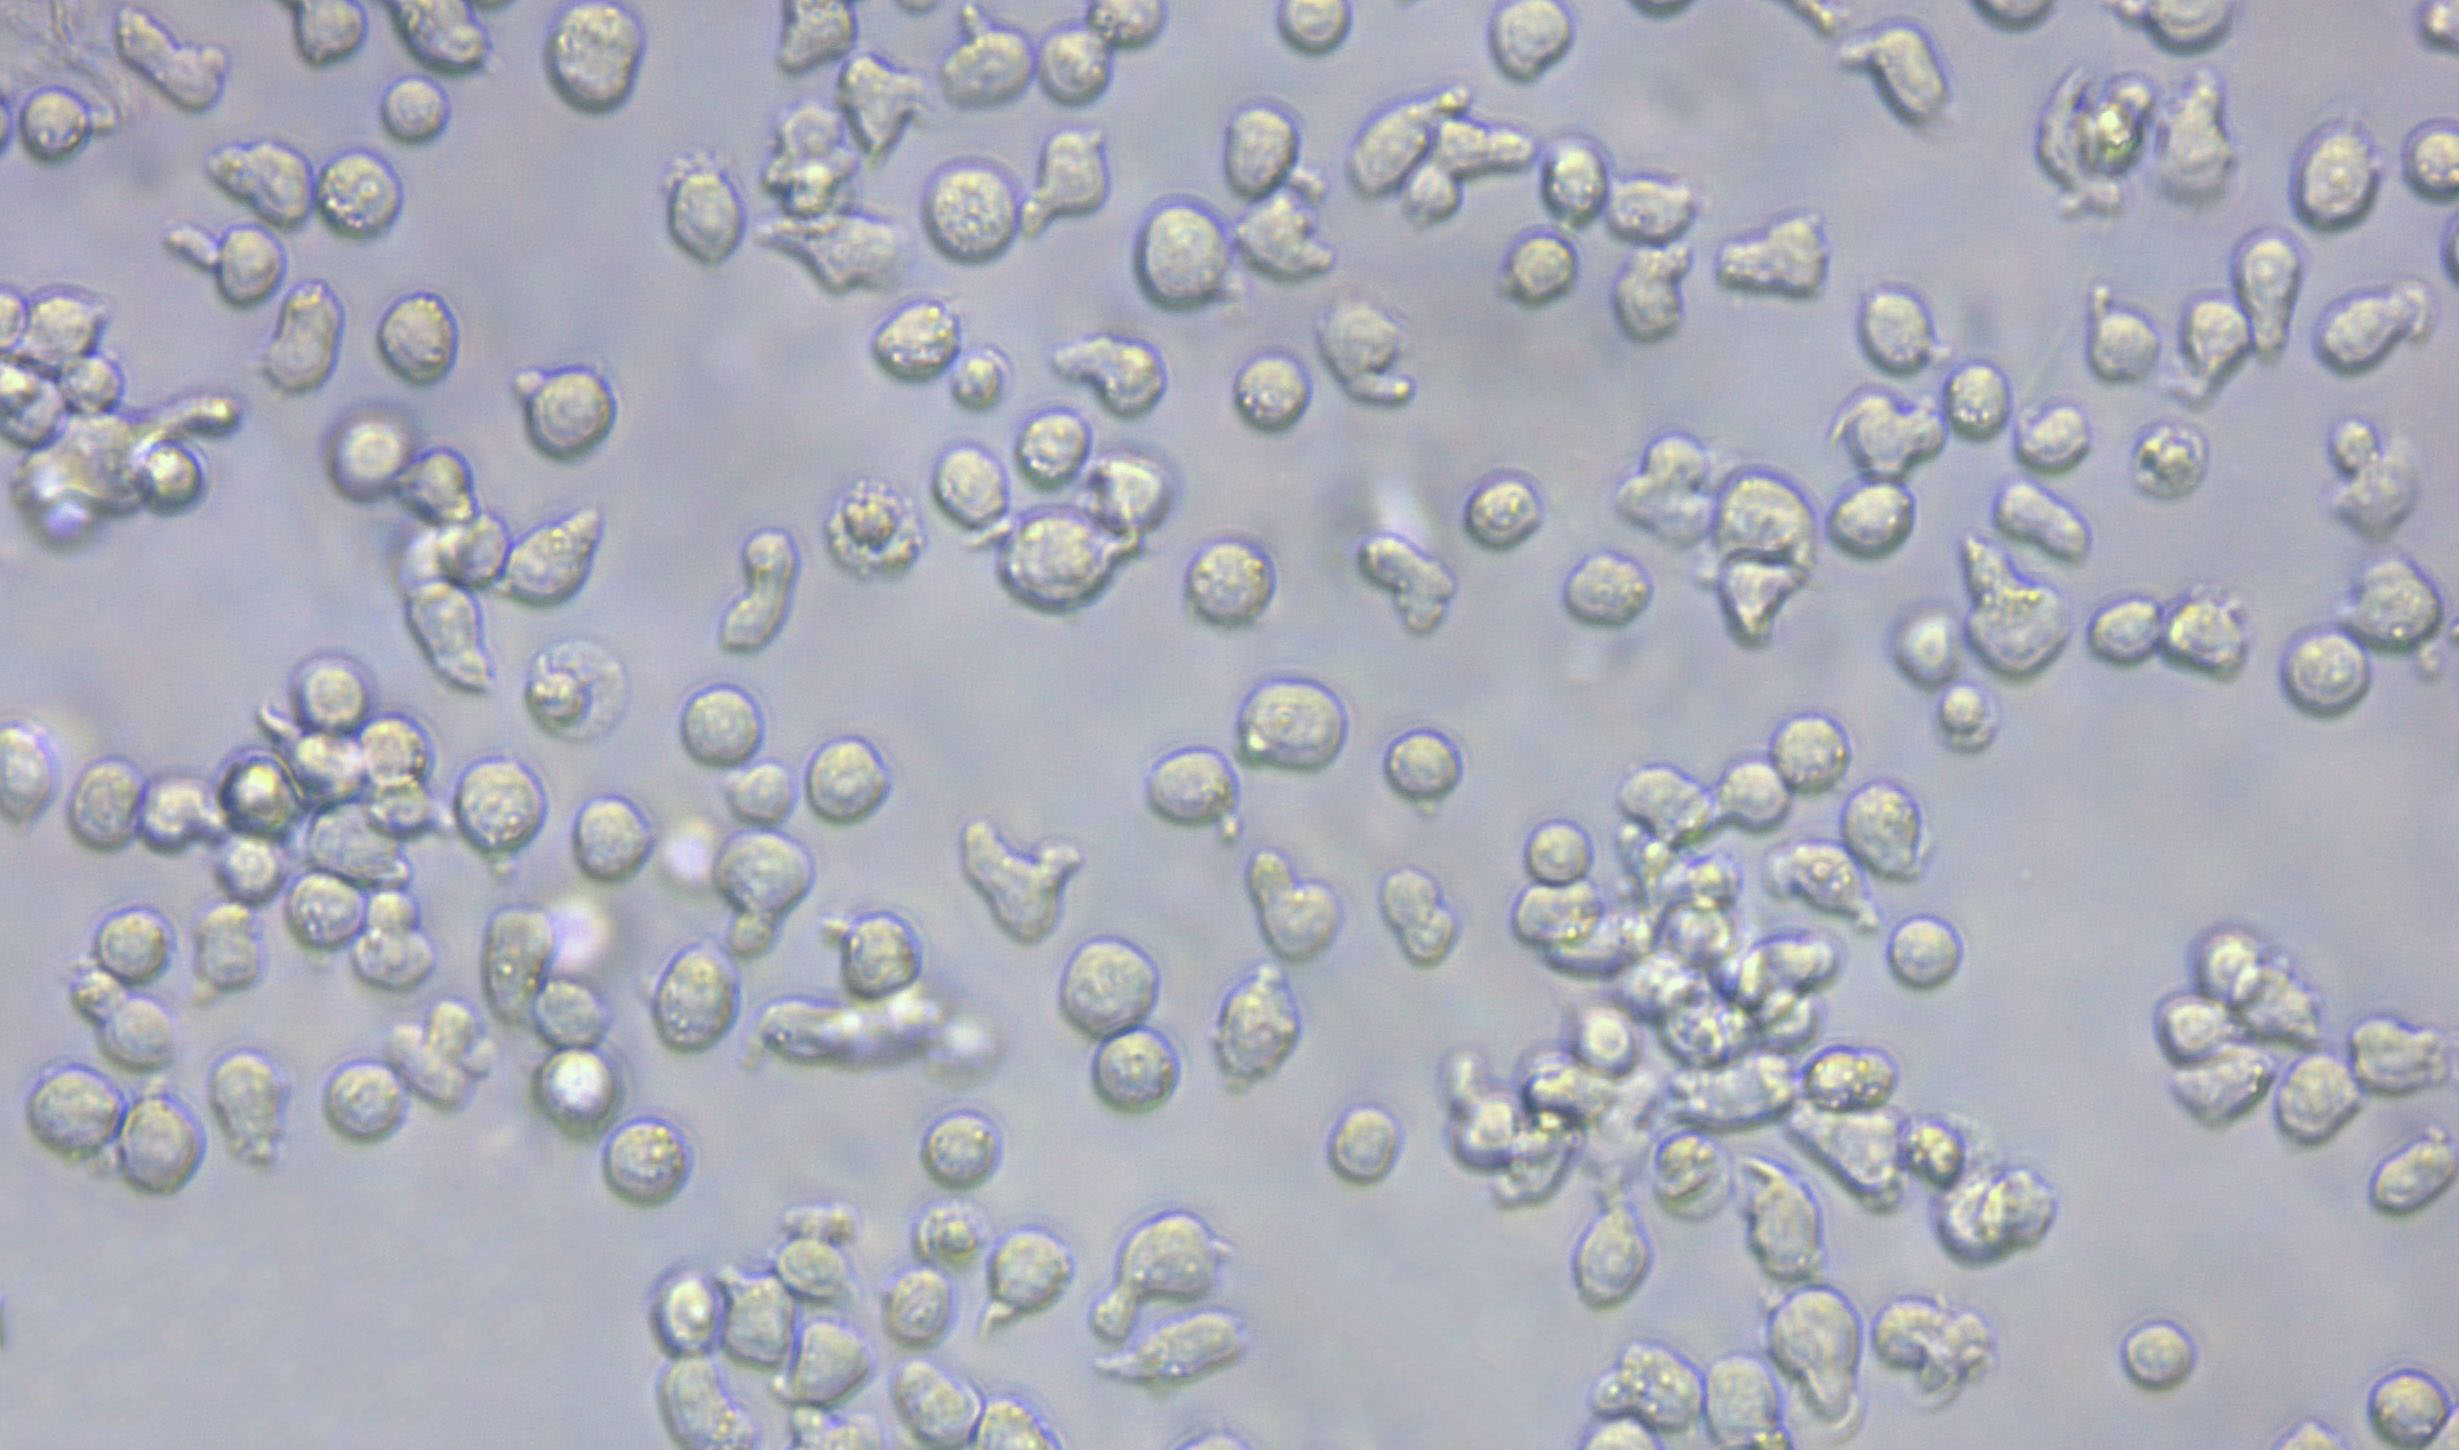 强化梭菌干燥粉末培养基,Reinforced Medium for Clostridia